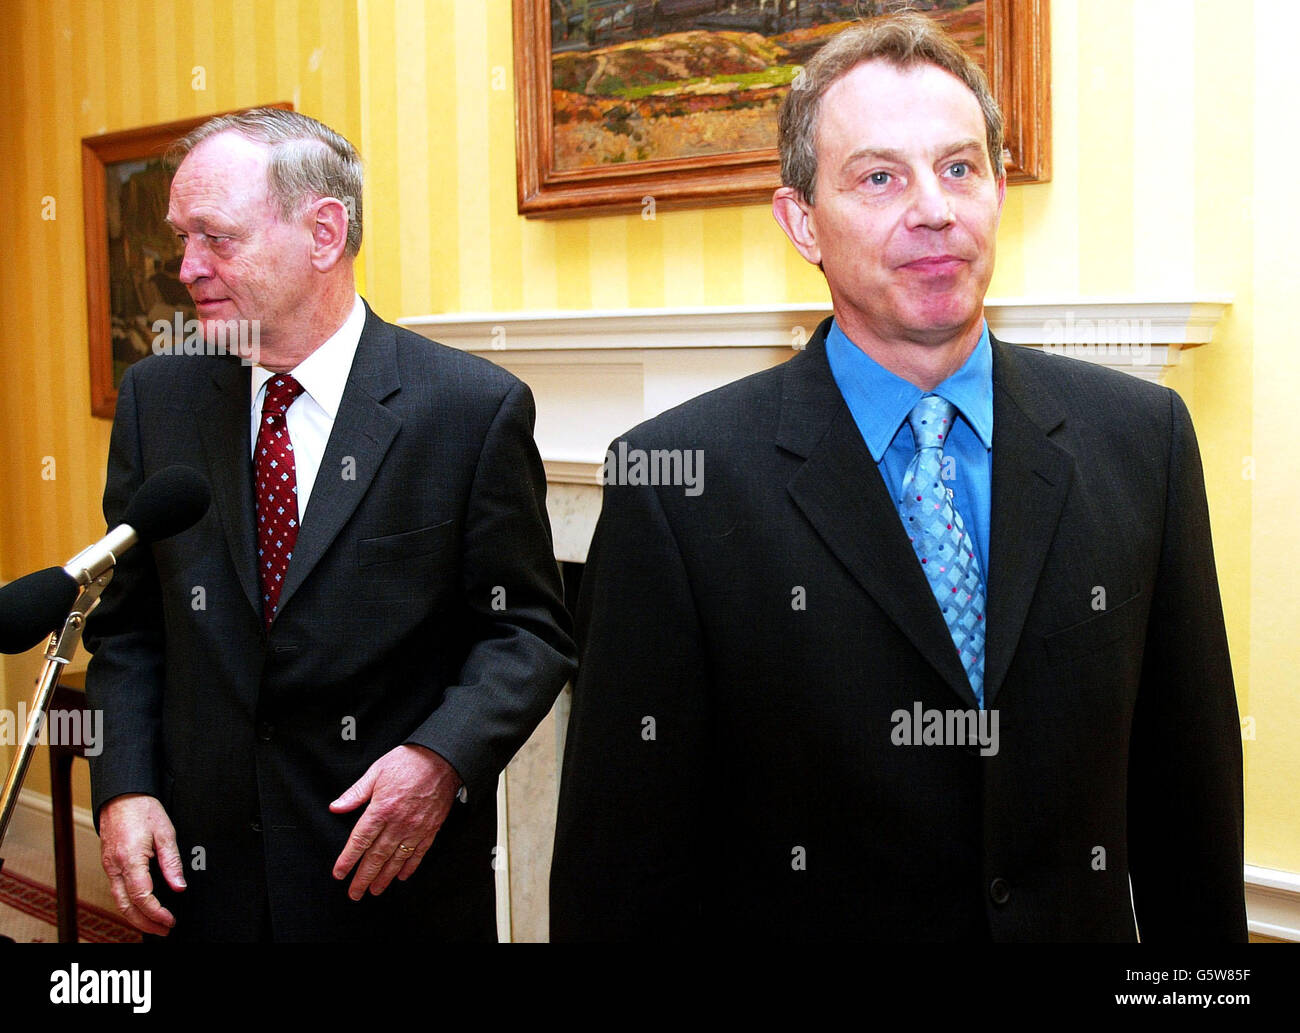 Der britische Premierminister Tony Blair (rechts) und der kanadische Premierminister Jean Chretien halten eine Pressekonferenz in Downing Street, London ab. Diskussionsthemen waren der bevorstehende G8-Gipfel im Juni und ihre Hilfspläne für Afrika. Stockfoto